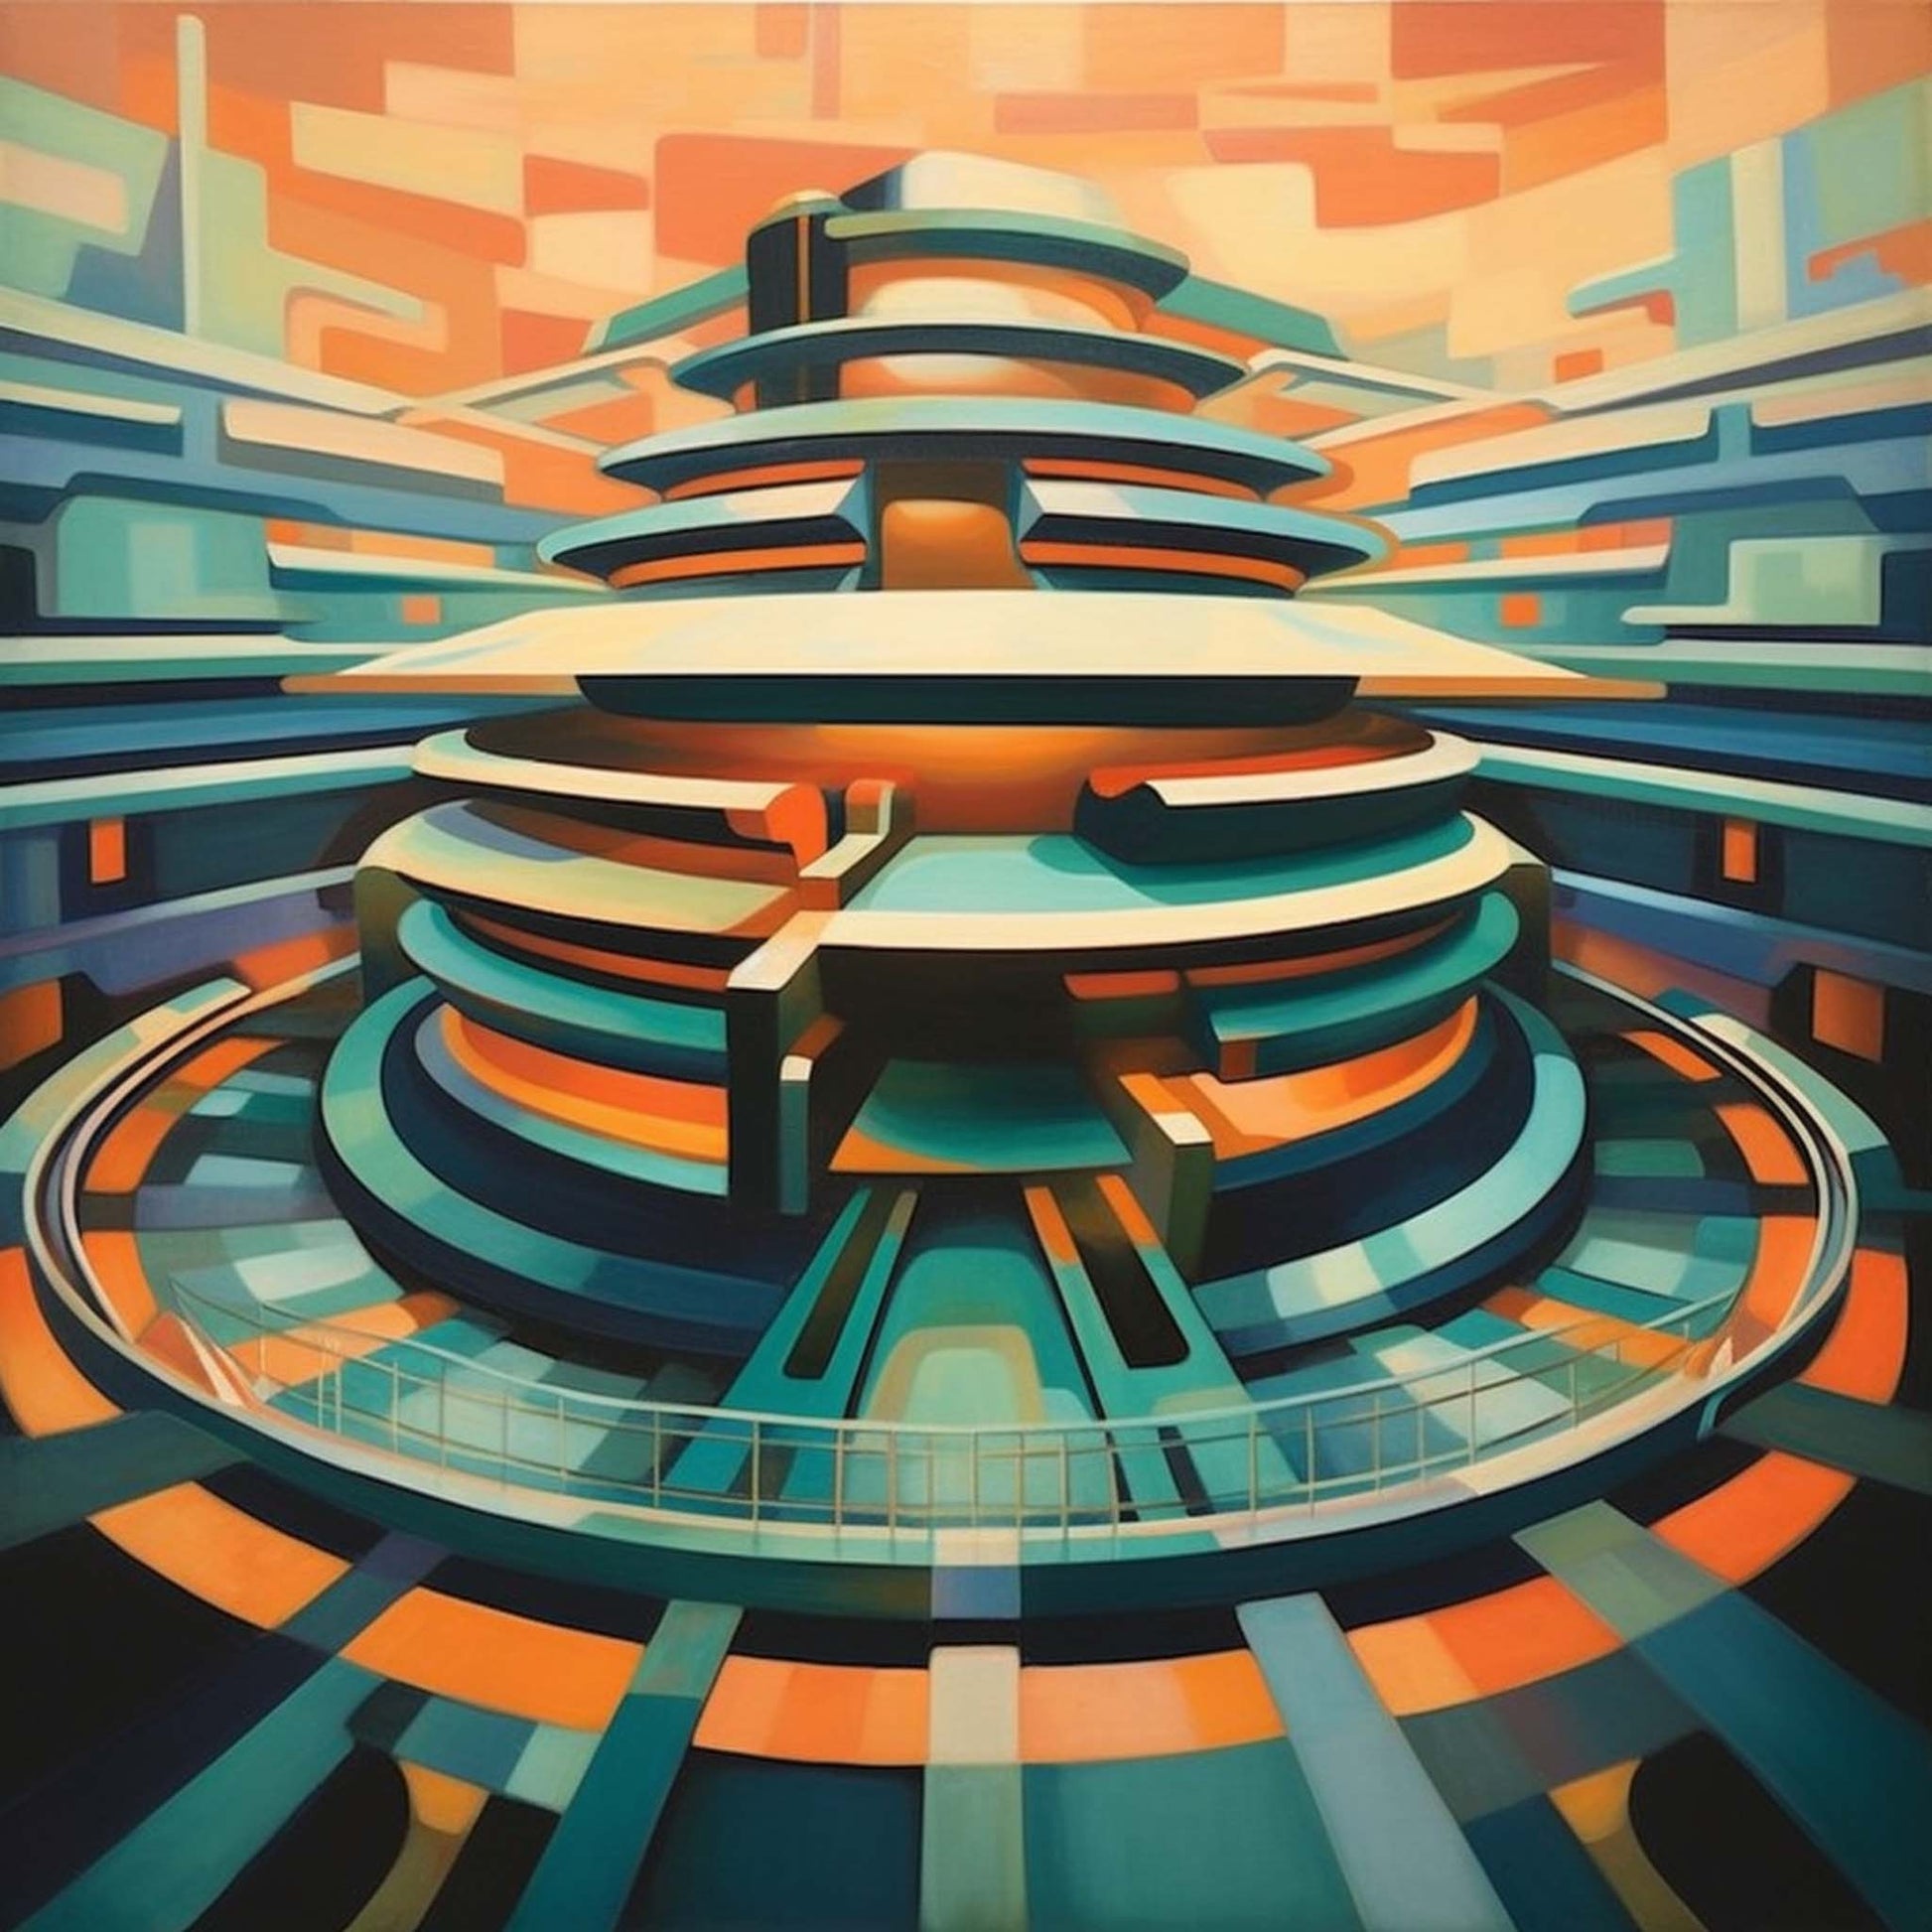 Urbanisto - New York Guggenheim Museum - Wandbild in der Stilrichtung des Futurismus